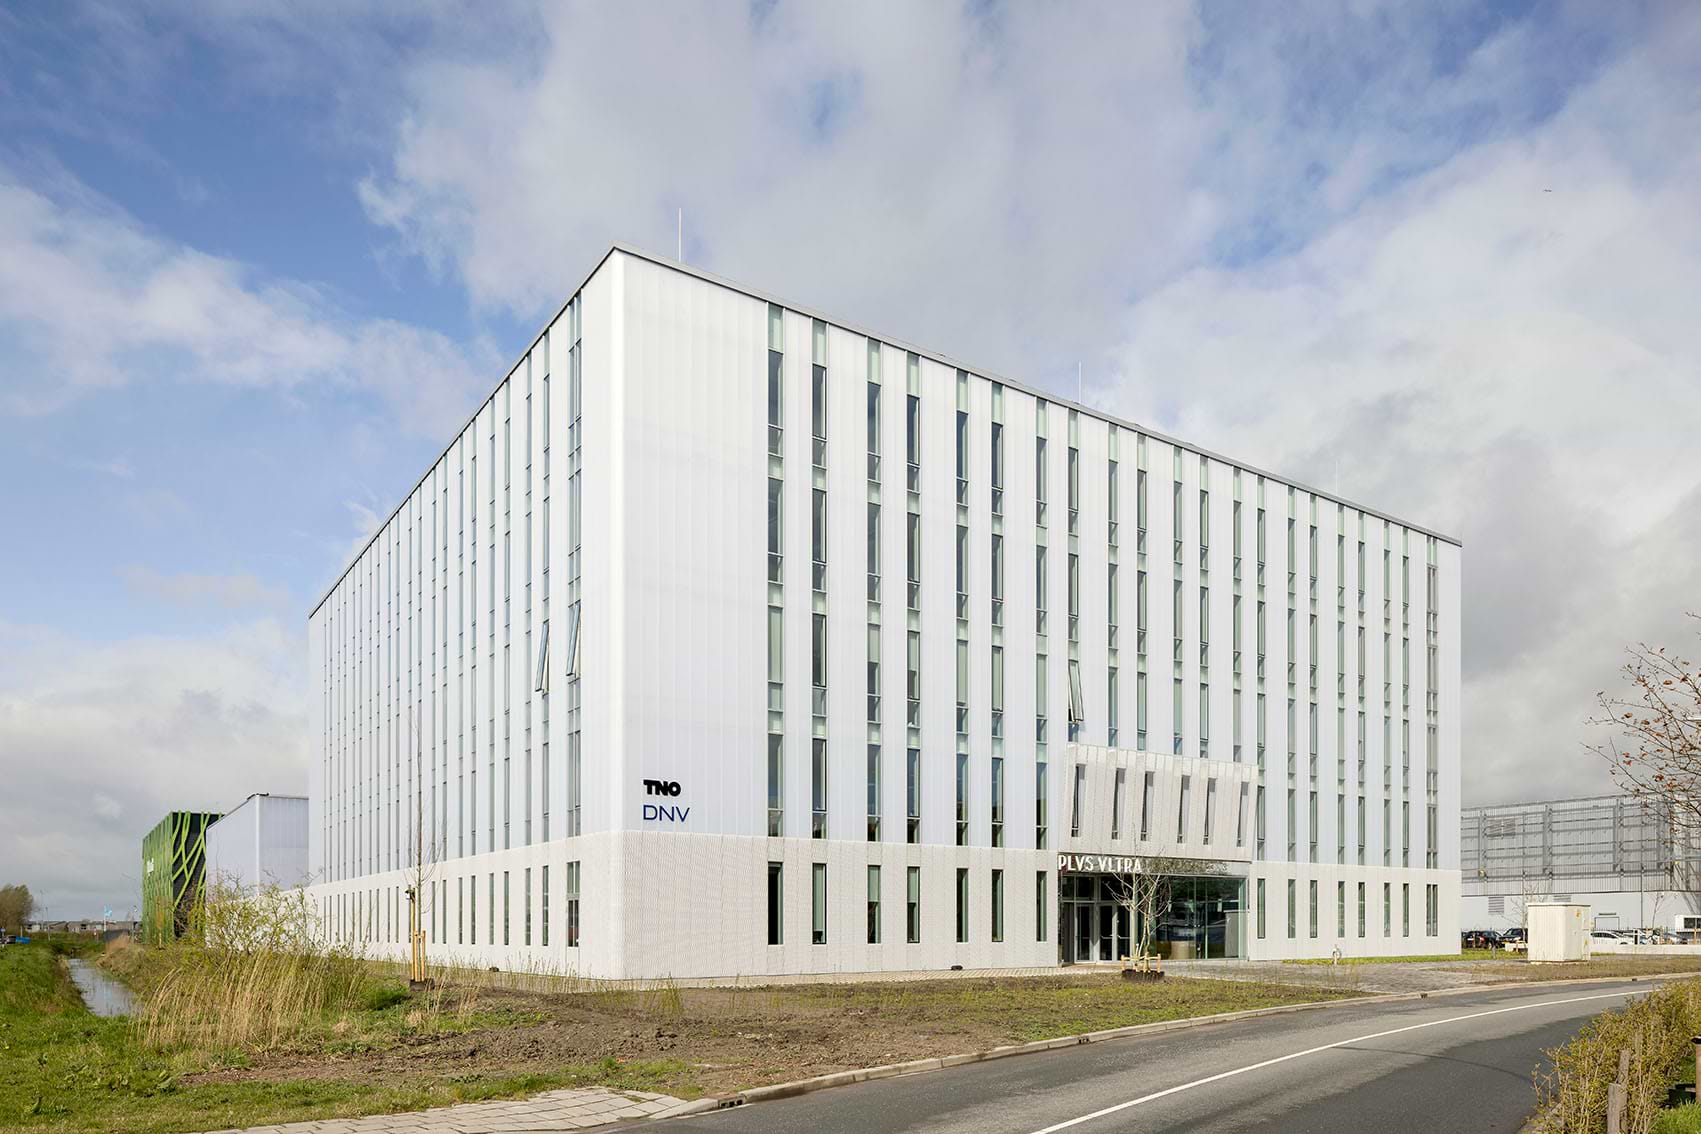 Plus Ultra Groningen is het nieuwste hypermoderne gebouw op de Zernike Campus in Groningen. Met een breed scala aan kantoor- en labruimtes en ontmoetingsplekken faciliteert Plus Ultra Groningen de vorming van een sterke community waar iedere huurder onderdeel van kan uitmaken.